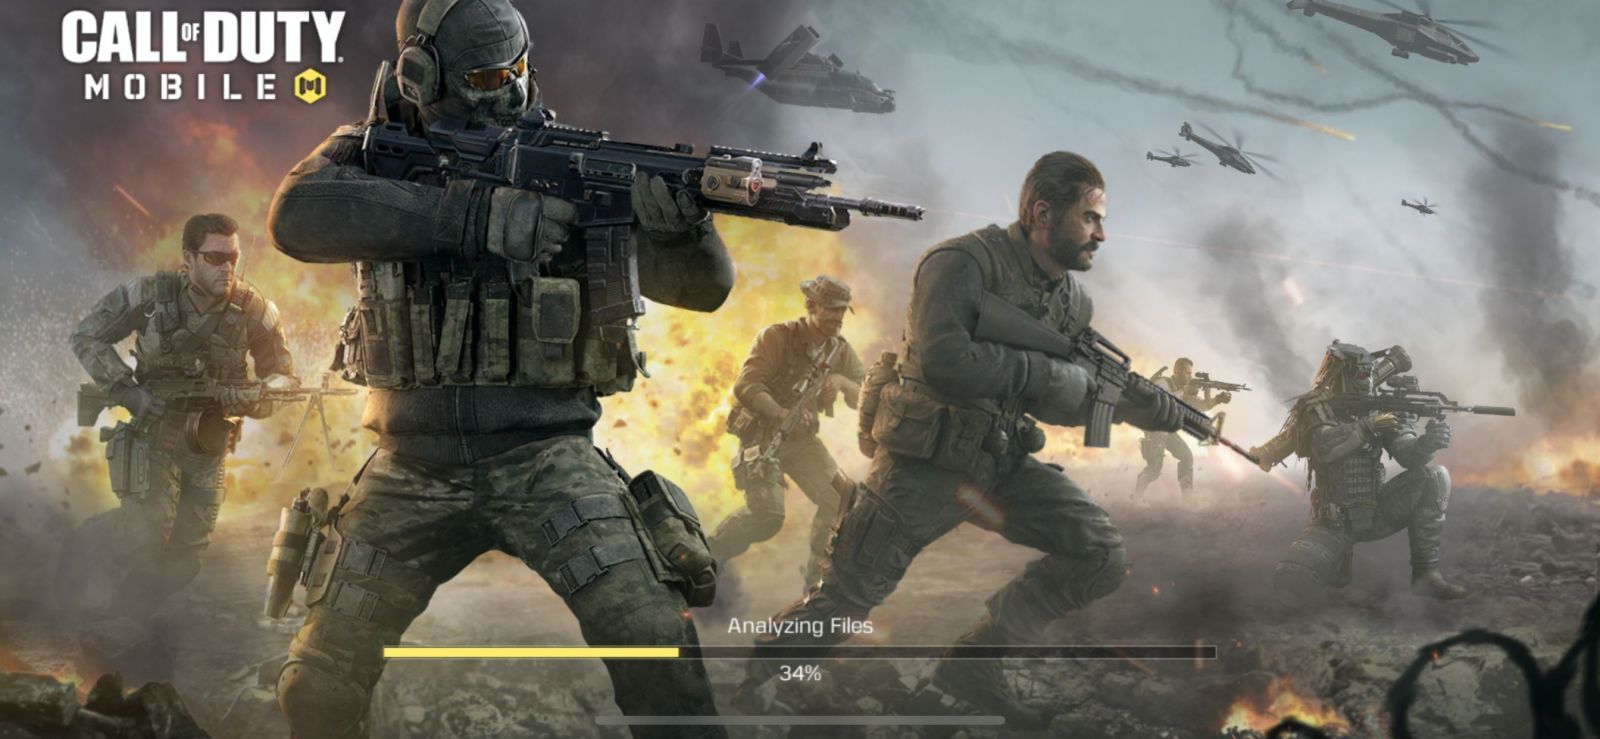 Vyskúšali sme Call of Duty: Mobile, na iOS alebo Android si ho môžeš zadarmo stiahnuť aj ty